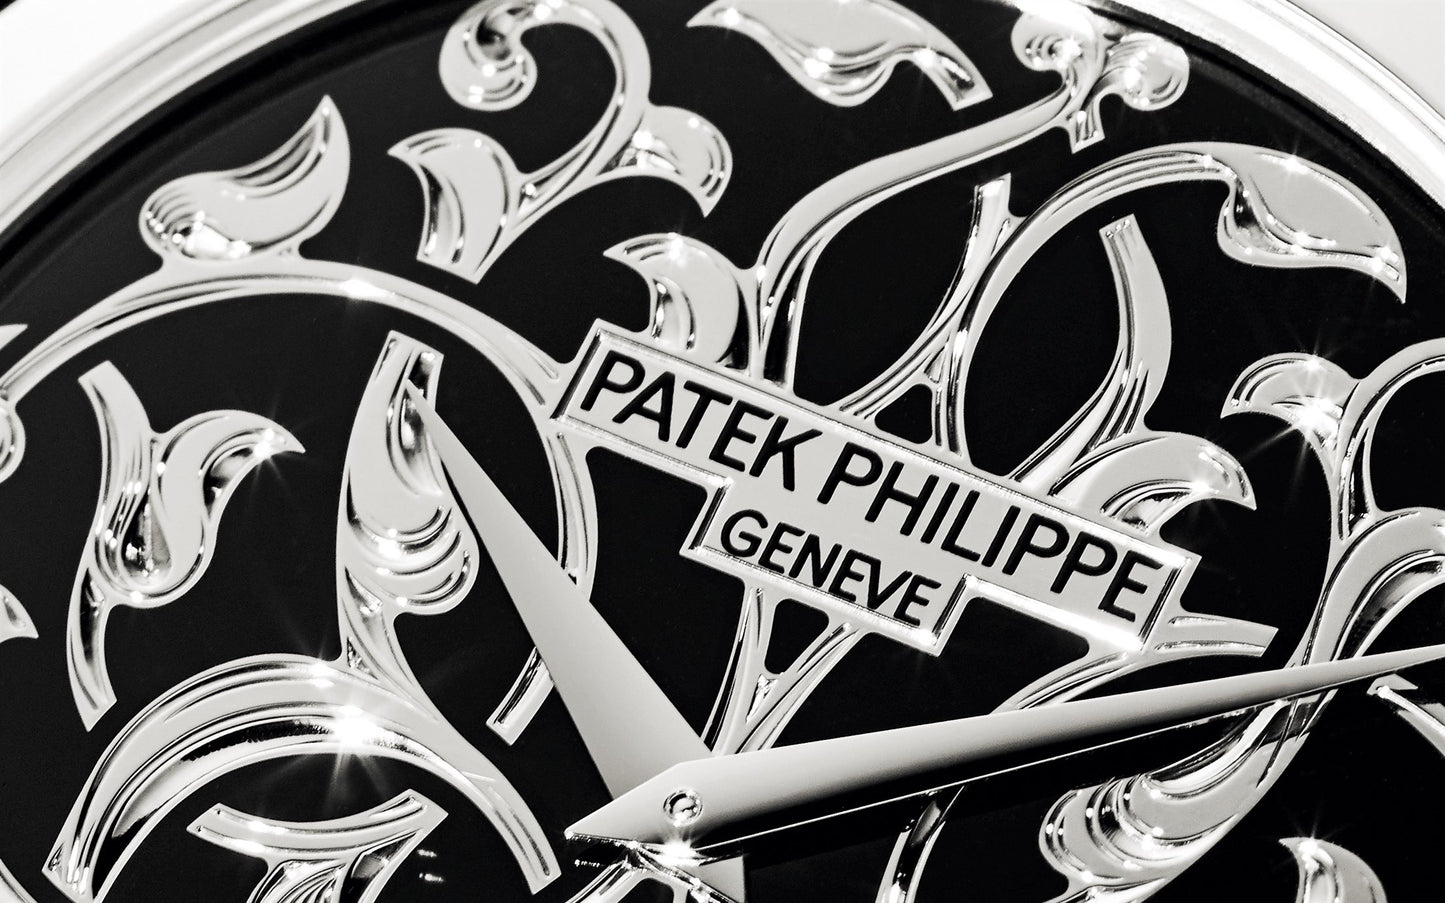 Patek Philippe Calatrava Volutes and Arabesques, Platinum, 38mm, Ref# 5088/100P-001, hands